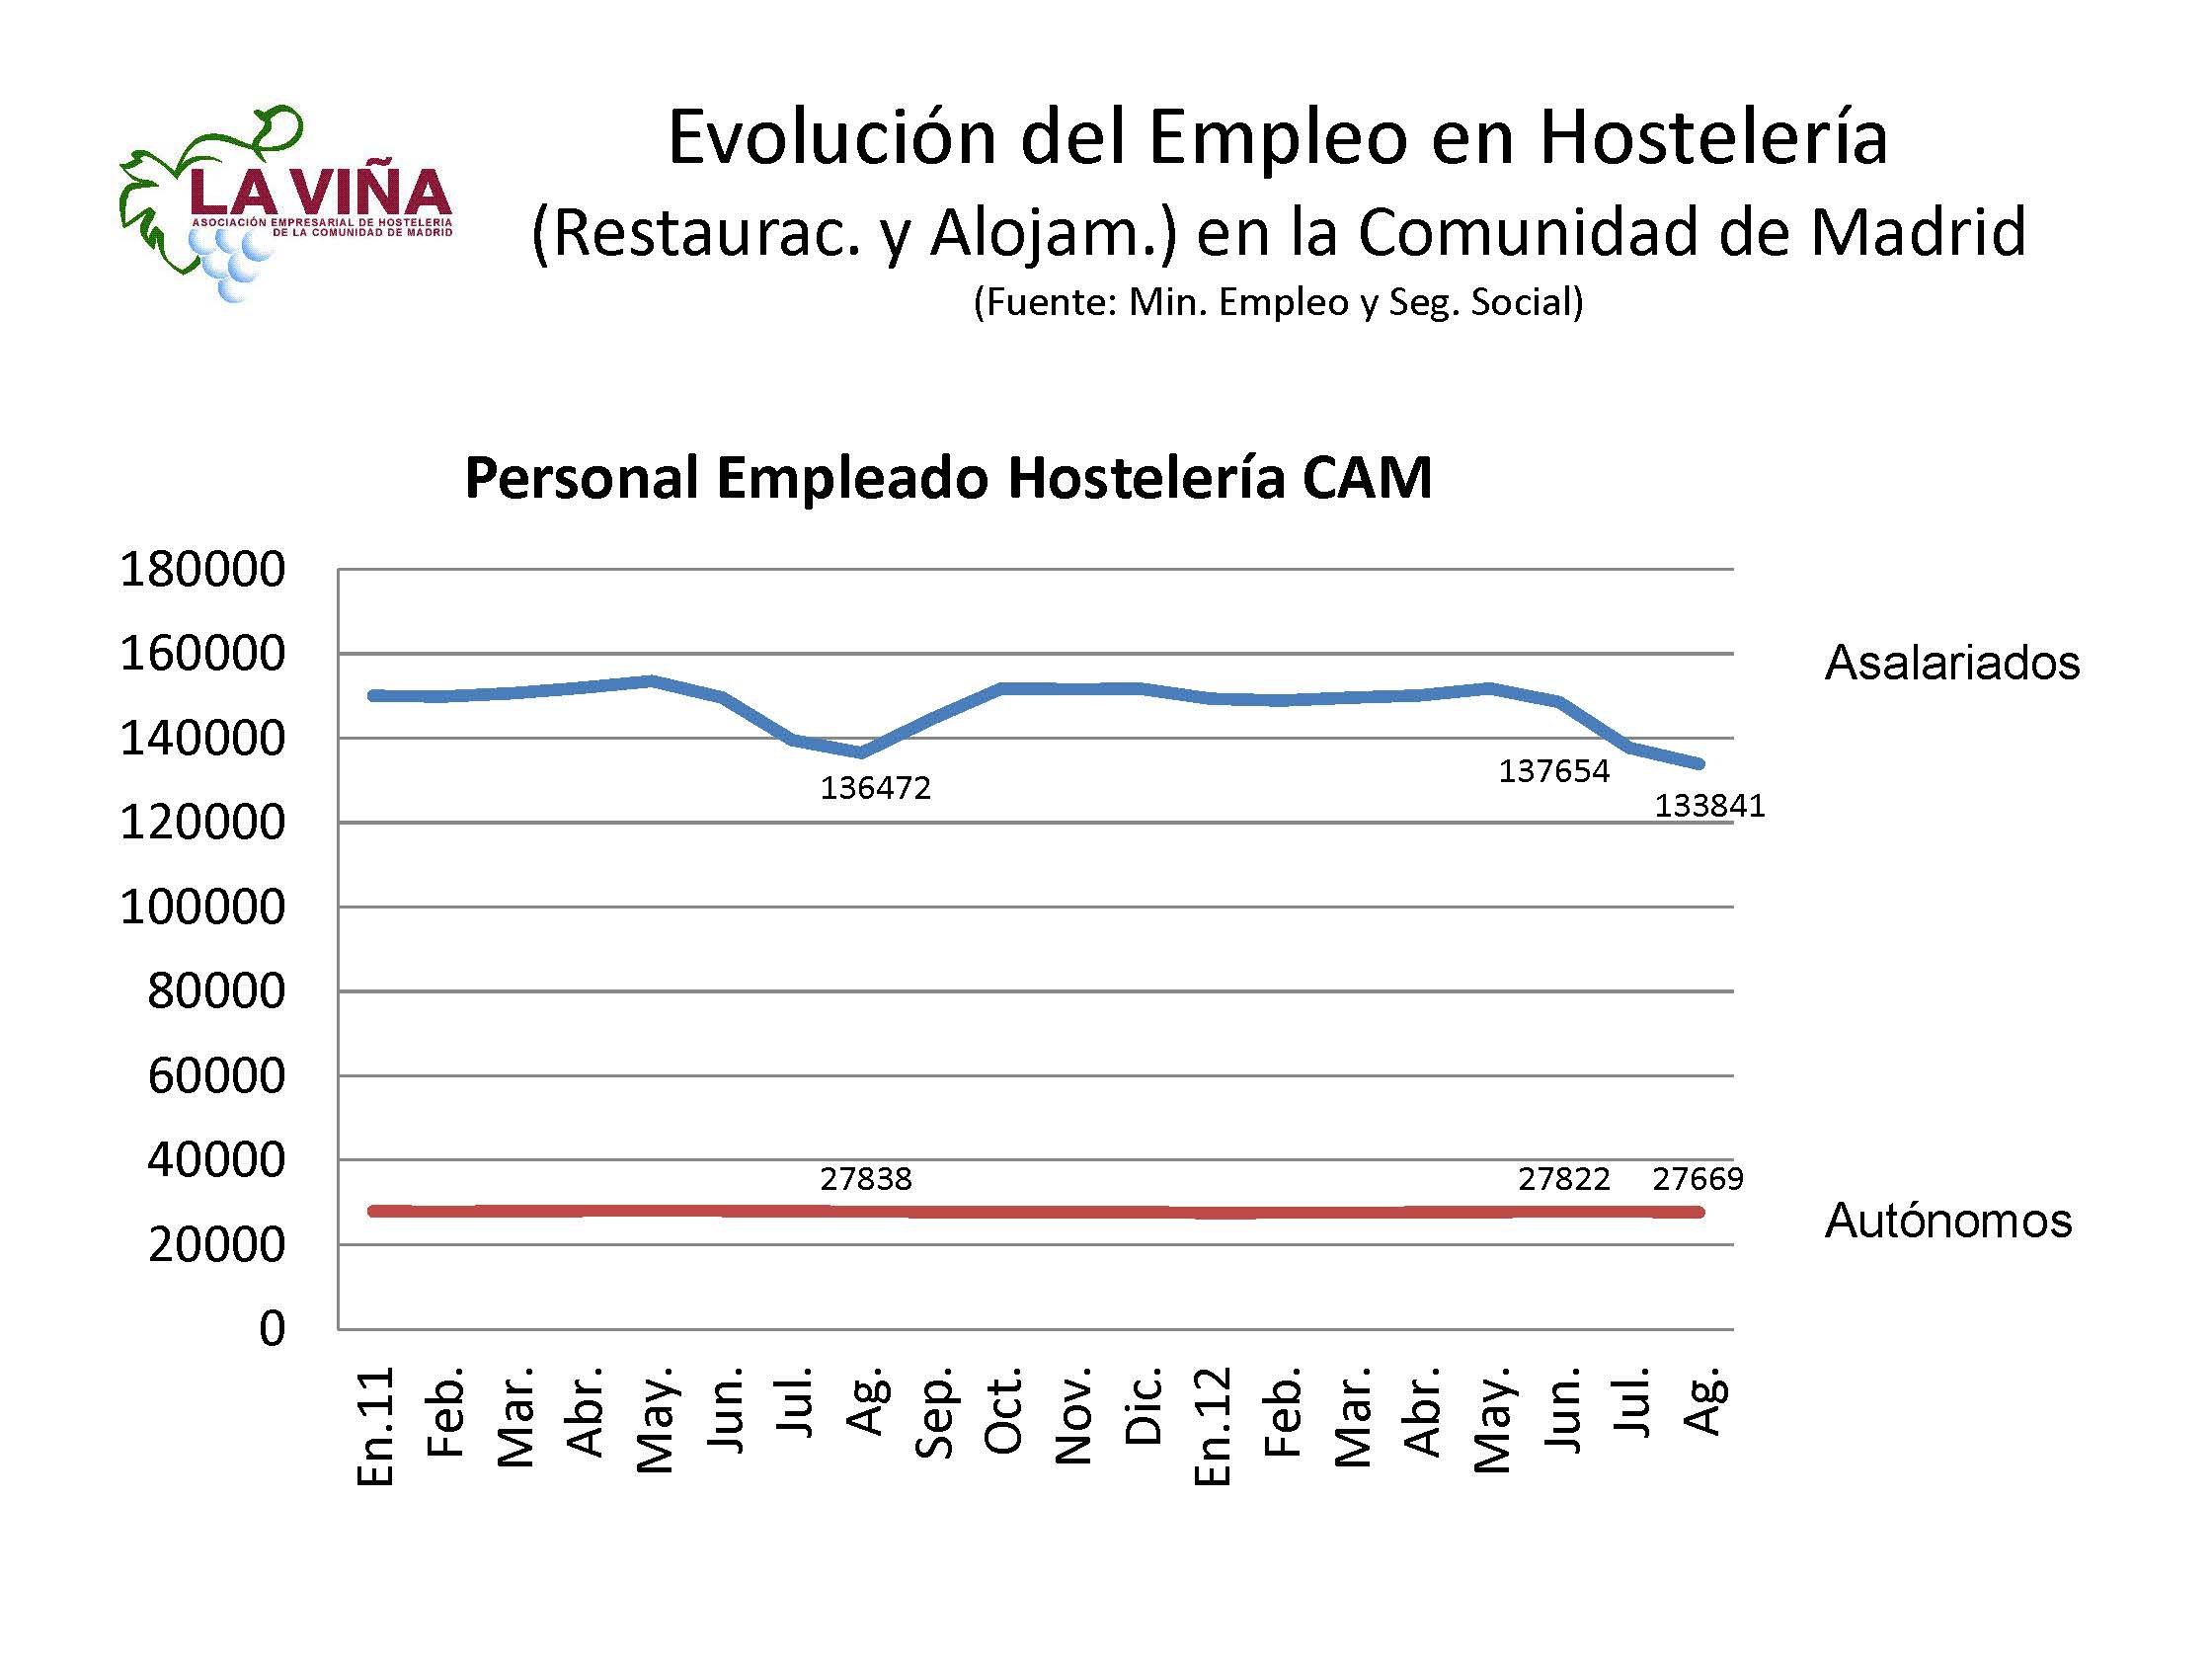 La llegada de turistas extranjeros a la Comunidad de Madrid aumenta un 3,3% en noviembre - La Viña